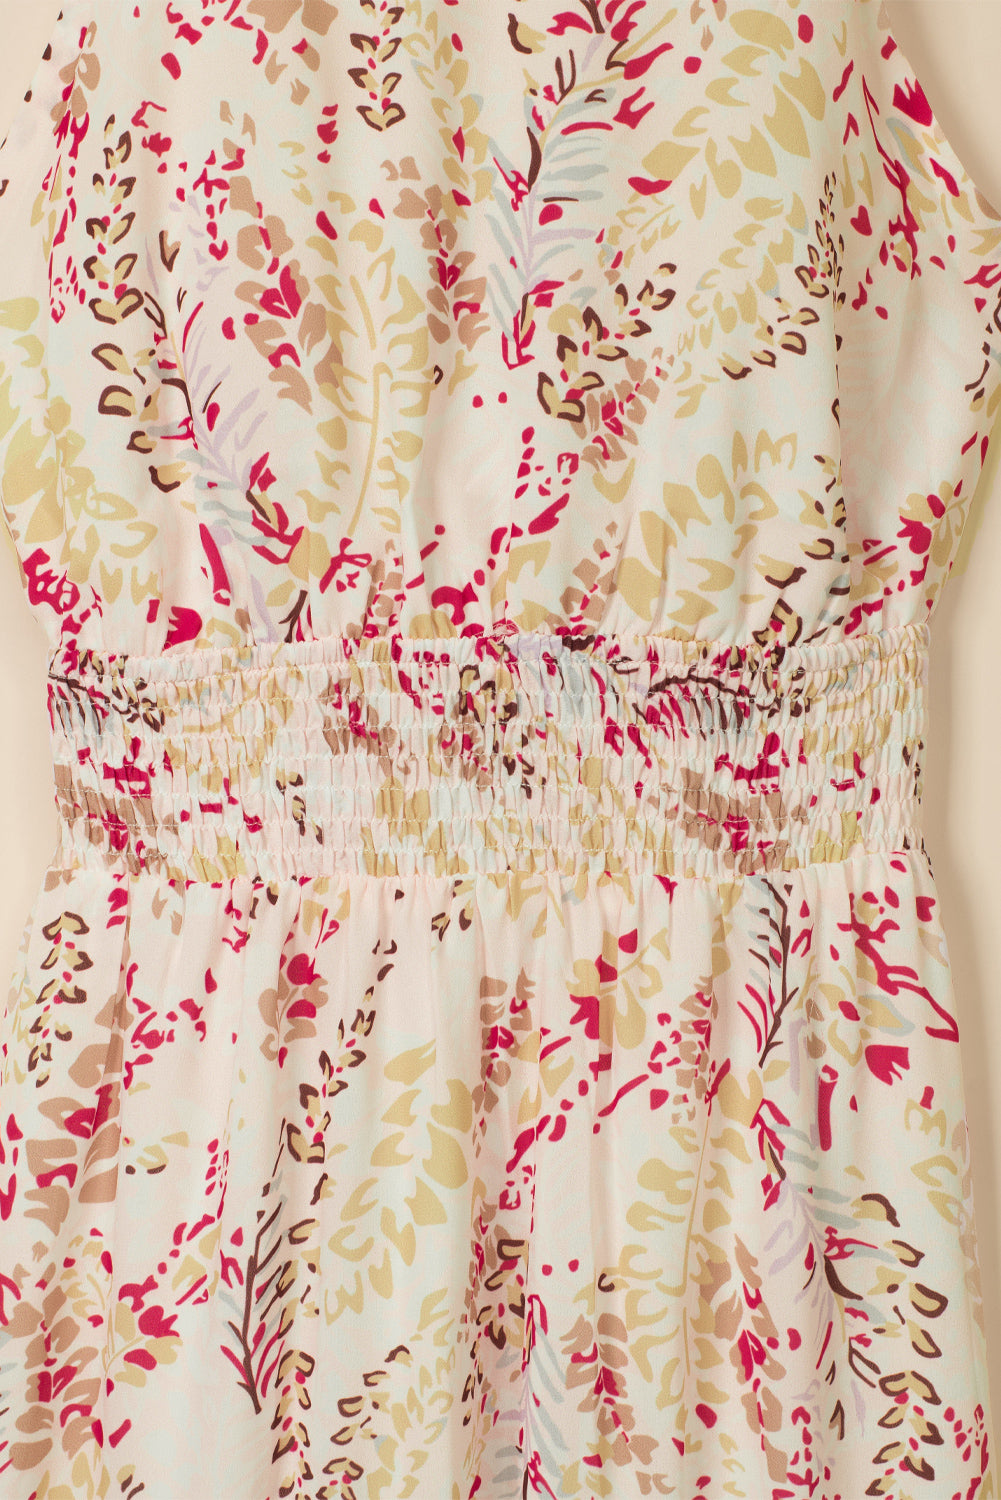 Večbarvna prepletena dolga obleka s cvetličnimi motivi brez hrbta